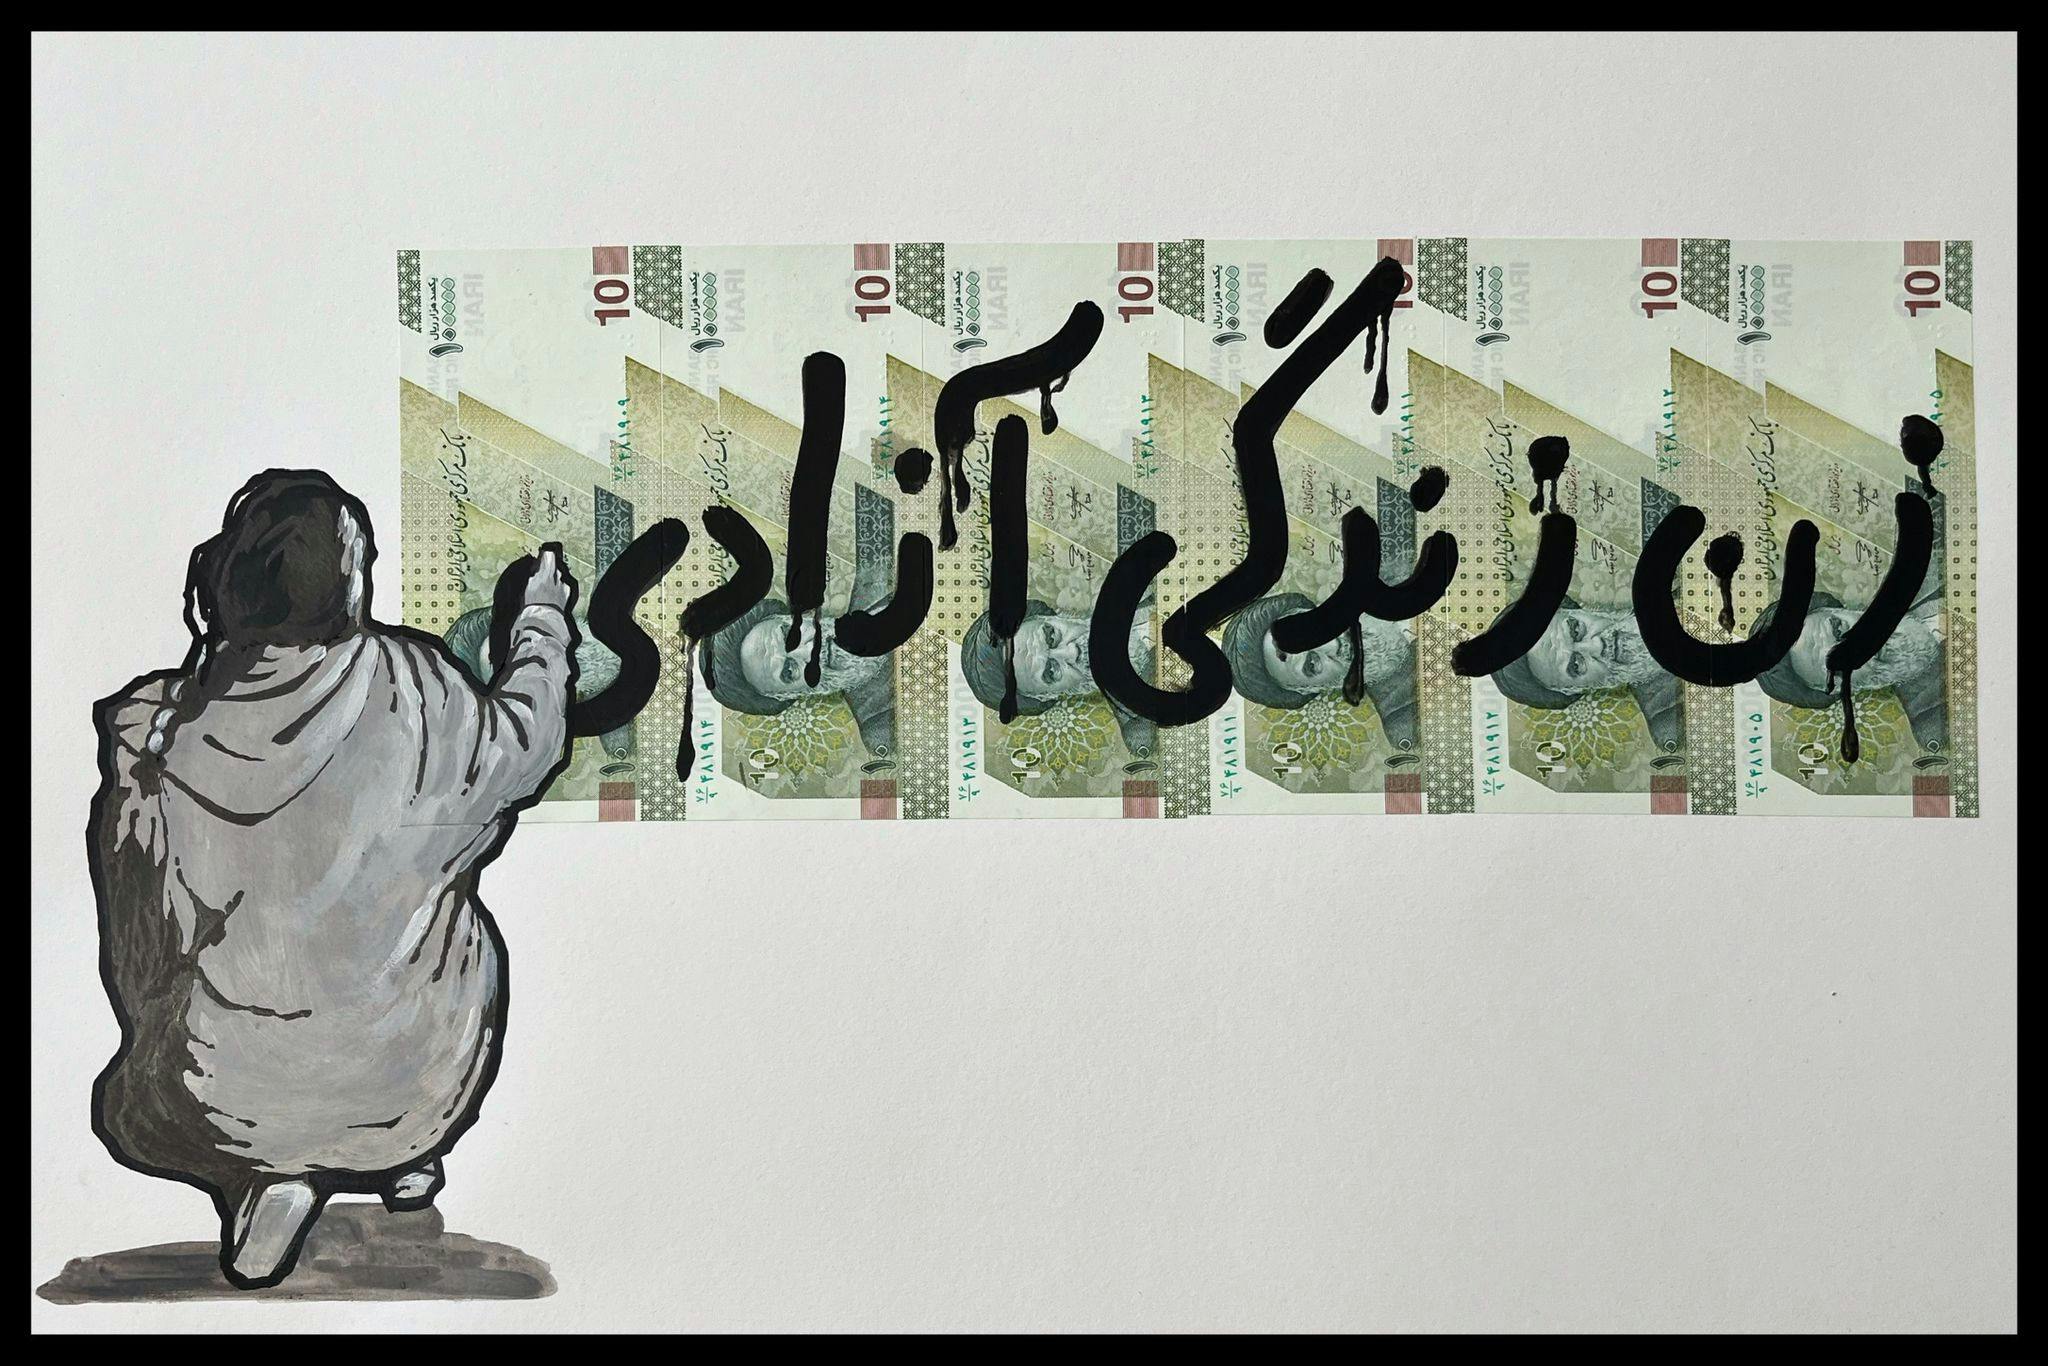 نوشتن شعار زن زندگی آزادی بر روی پول ایران